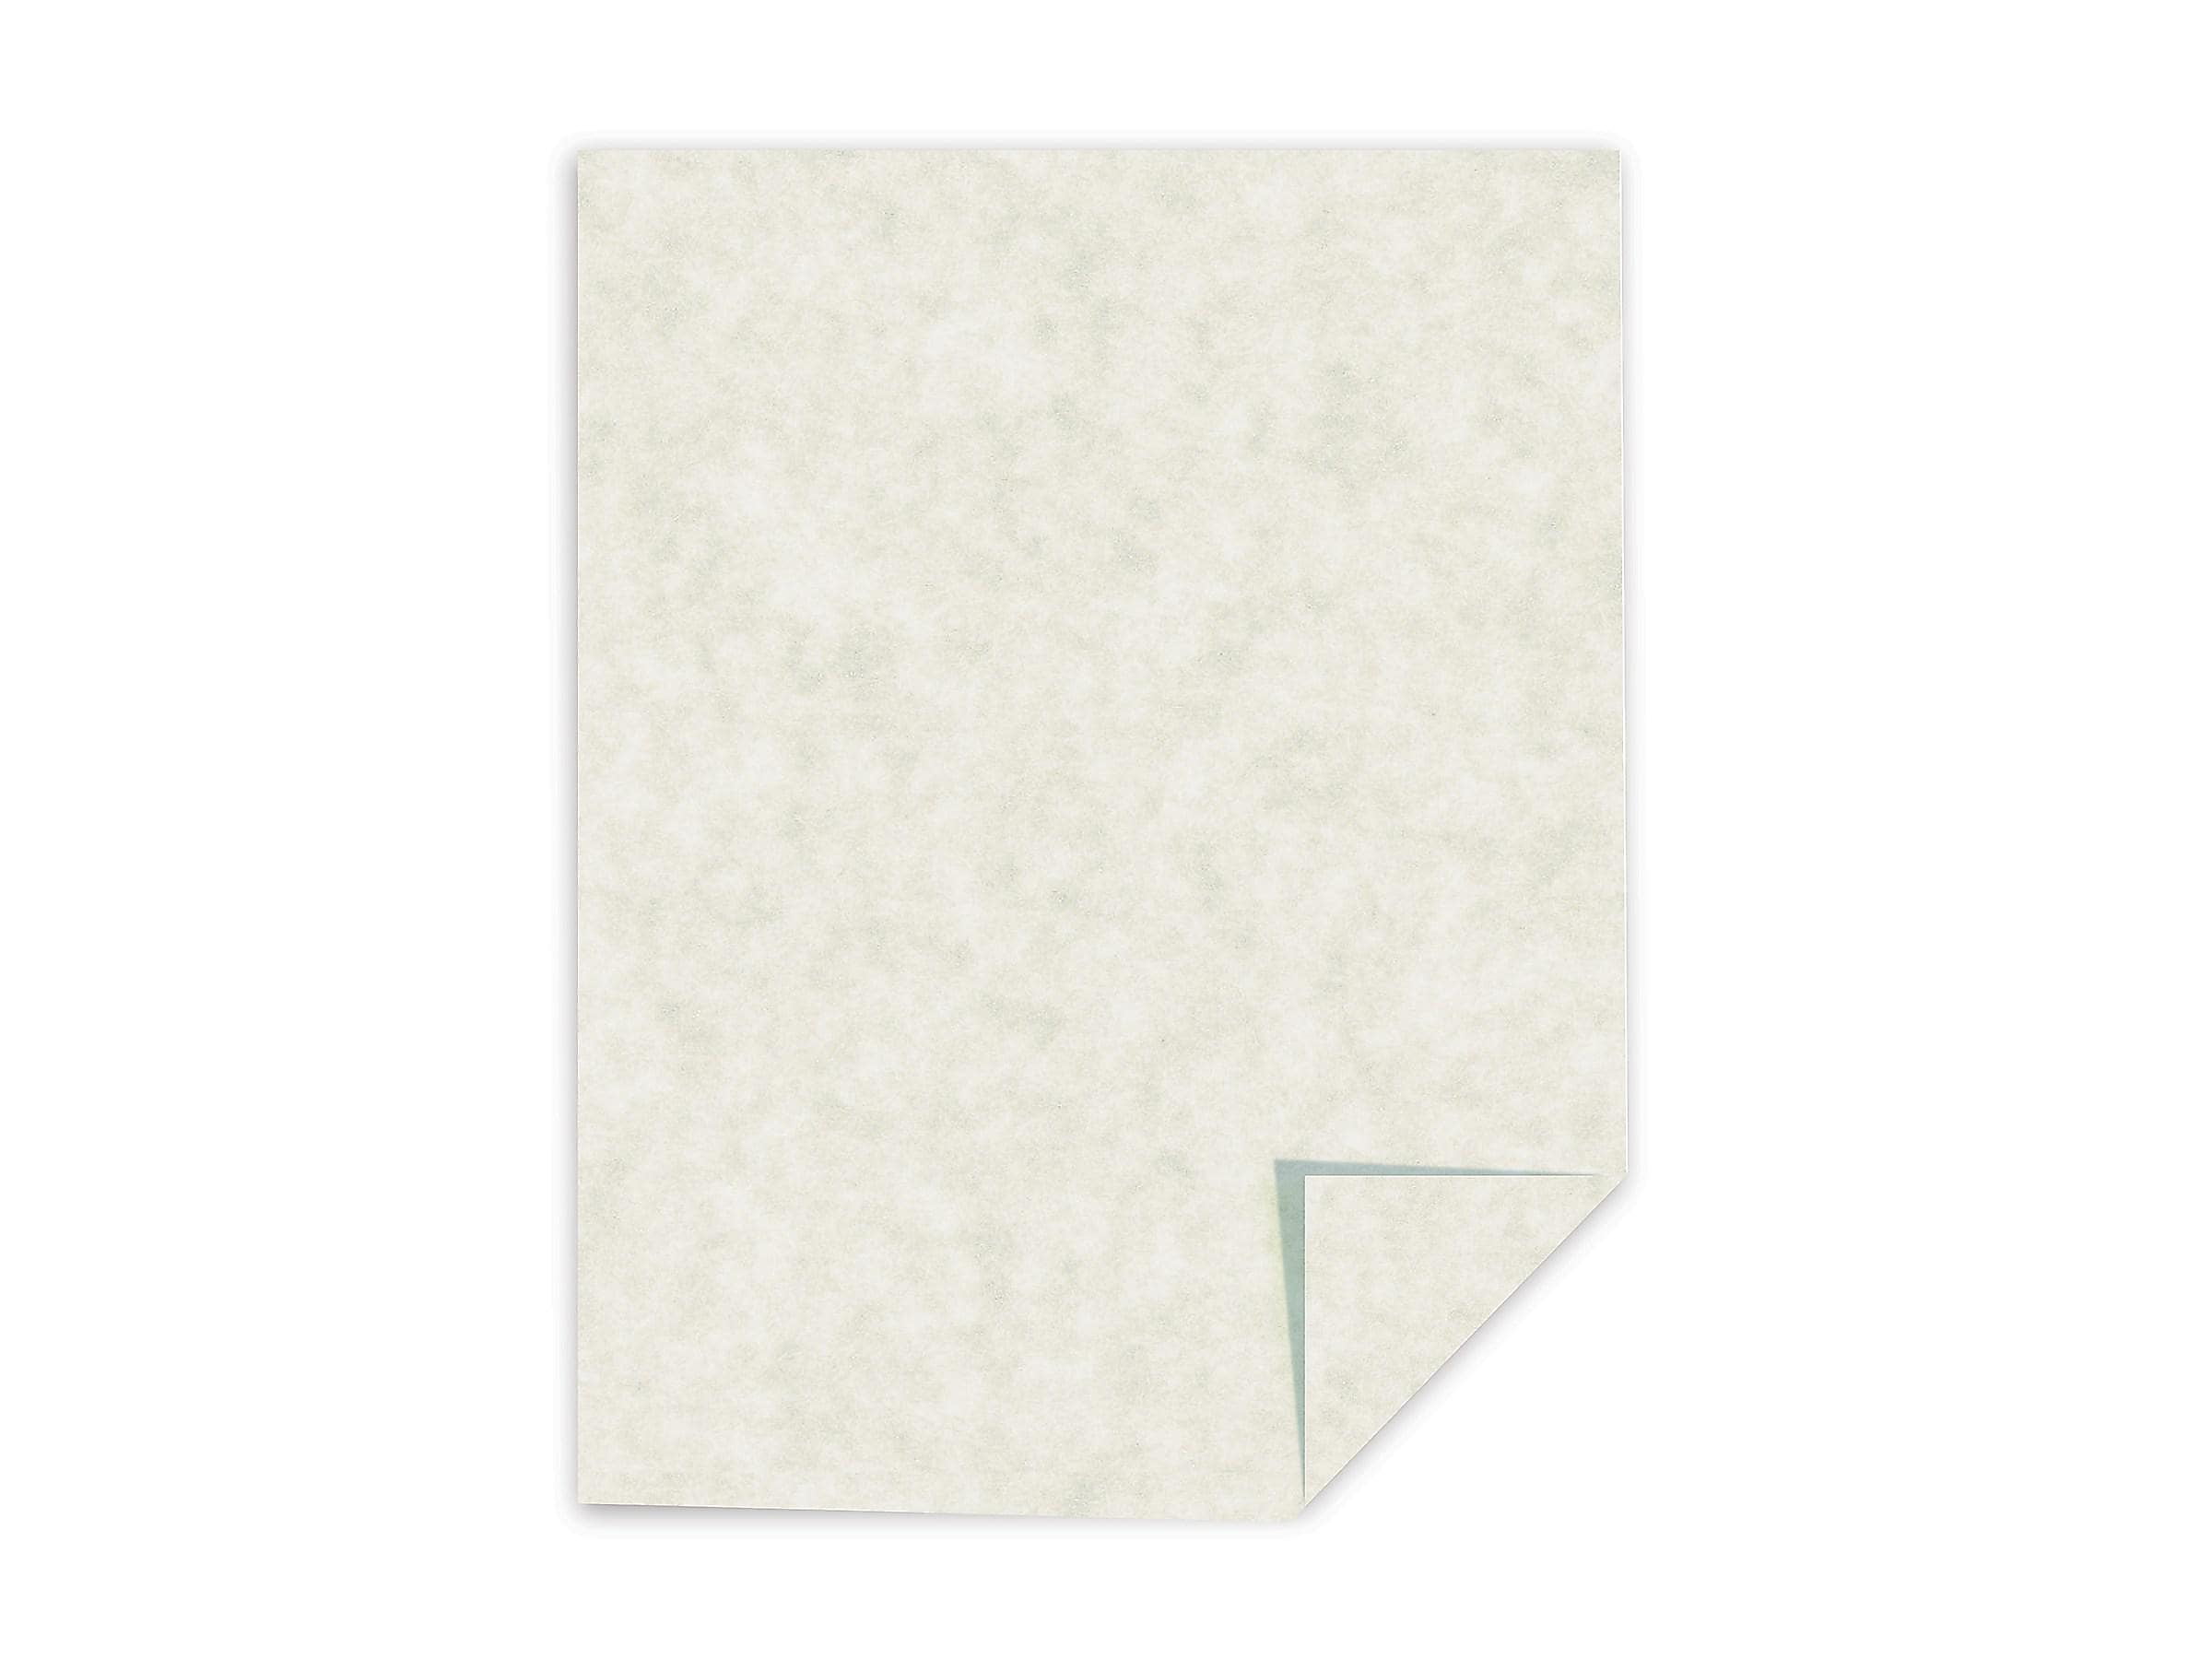 Southworth 984C Parchment Specialty Paper Ivory 24 lb. 8 1/2 x 11 500/Box  (SOU984C)